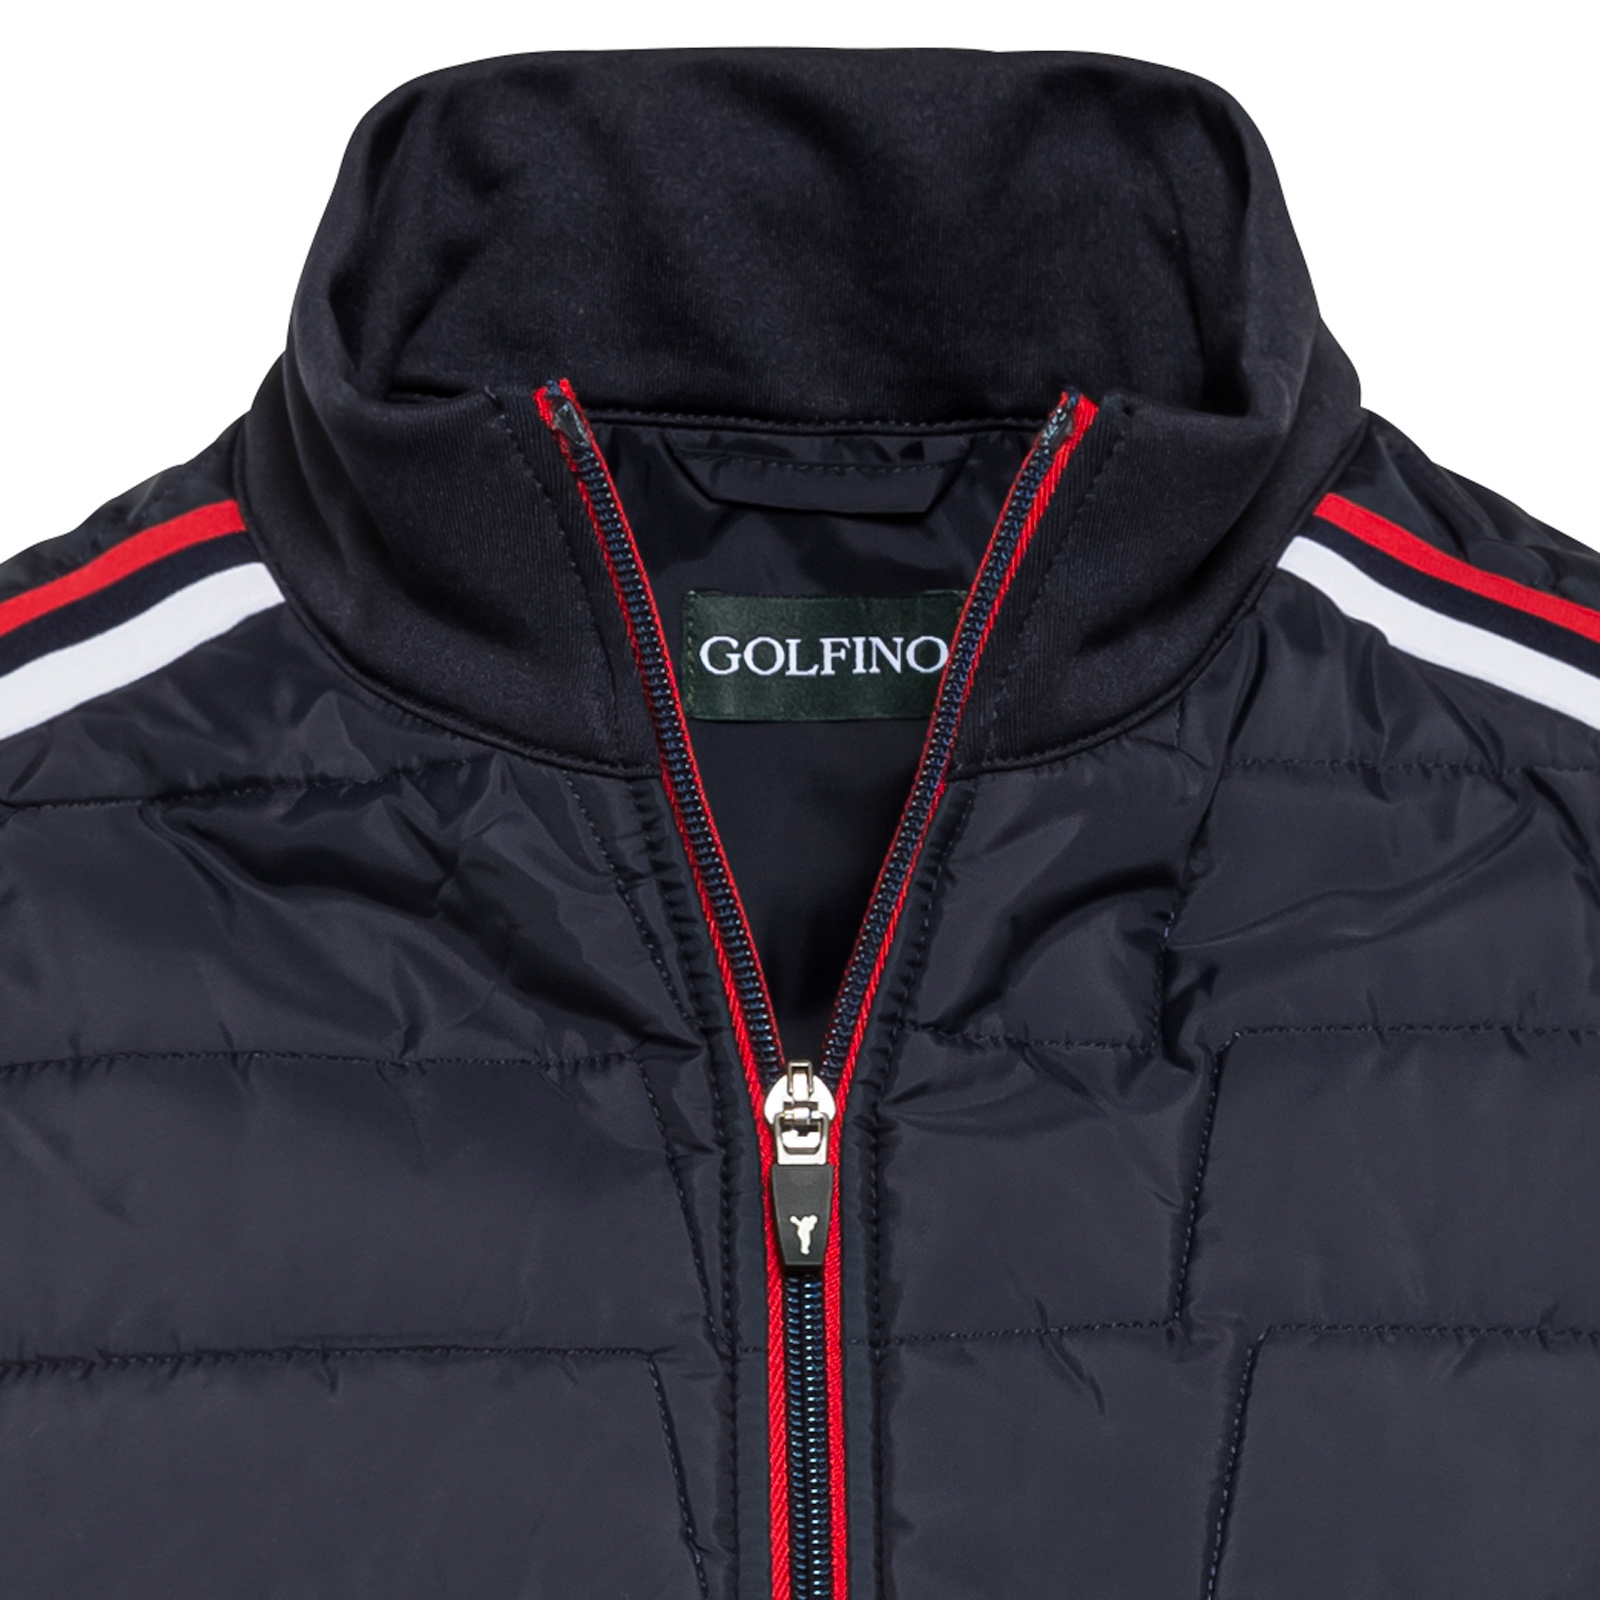 Veste de golf élastique avec bandes décoratives et fonction anti-froid